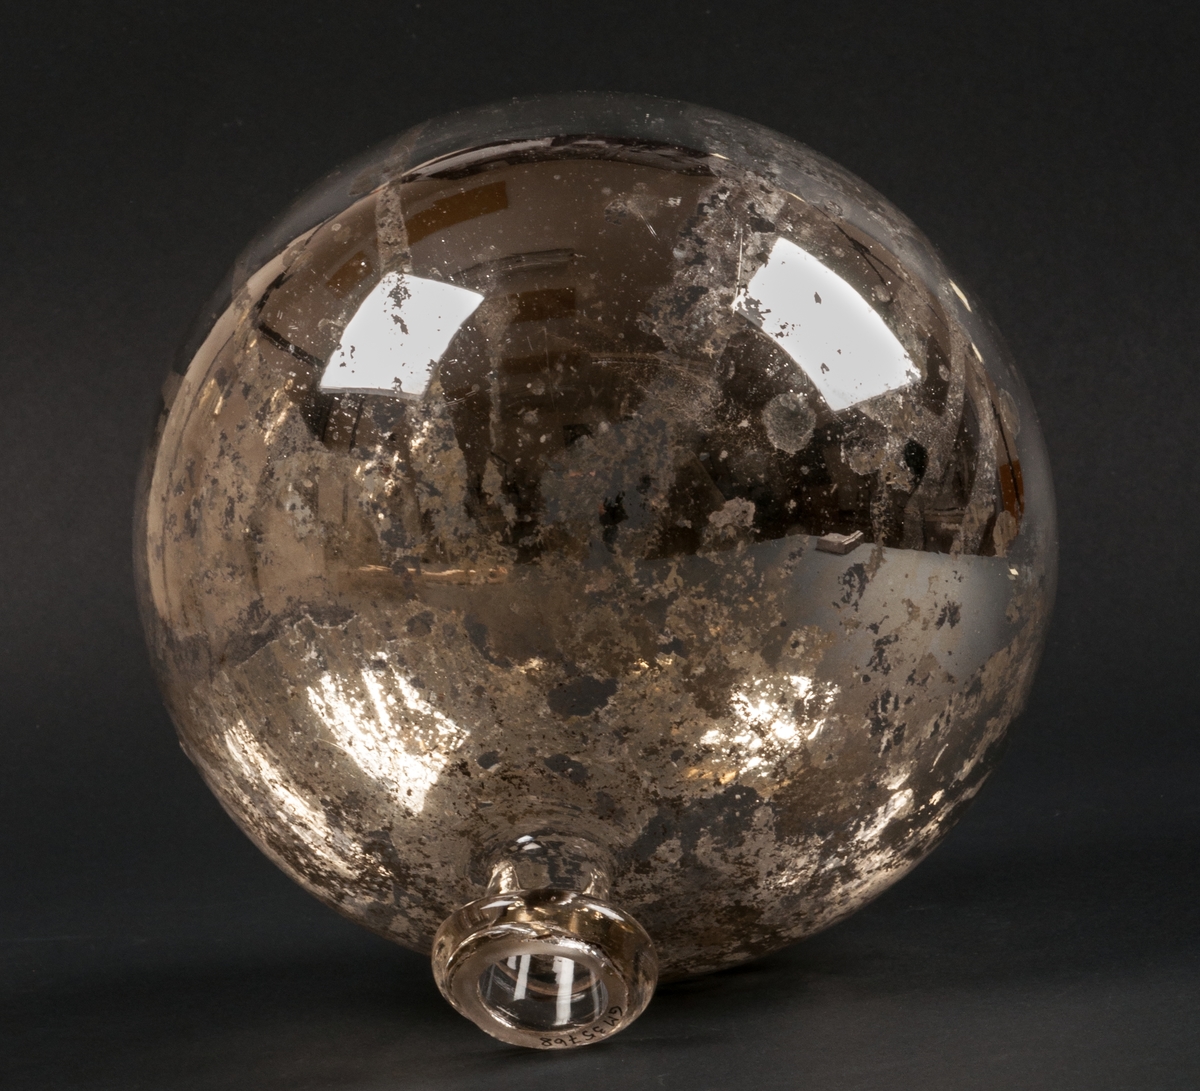 Trädgårdsprydnad i form av handblåst, silverfolierad glaskula som vilar i en "vas" av samma material. Förmodligen har kulan använts som trädgårdsprydnad utomhus. Kulan är med stor sannolikhet tillverkad vid Gefle Glasbruk vid Västra Löten i Gävle strax efter sekelskiftet 1900.